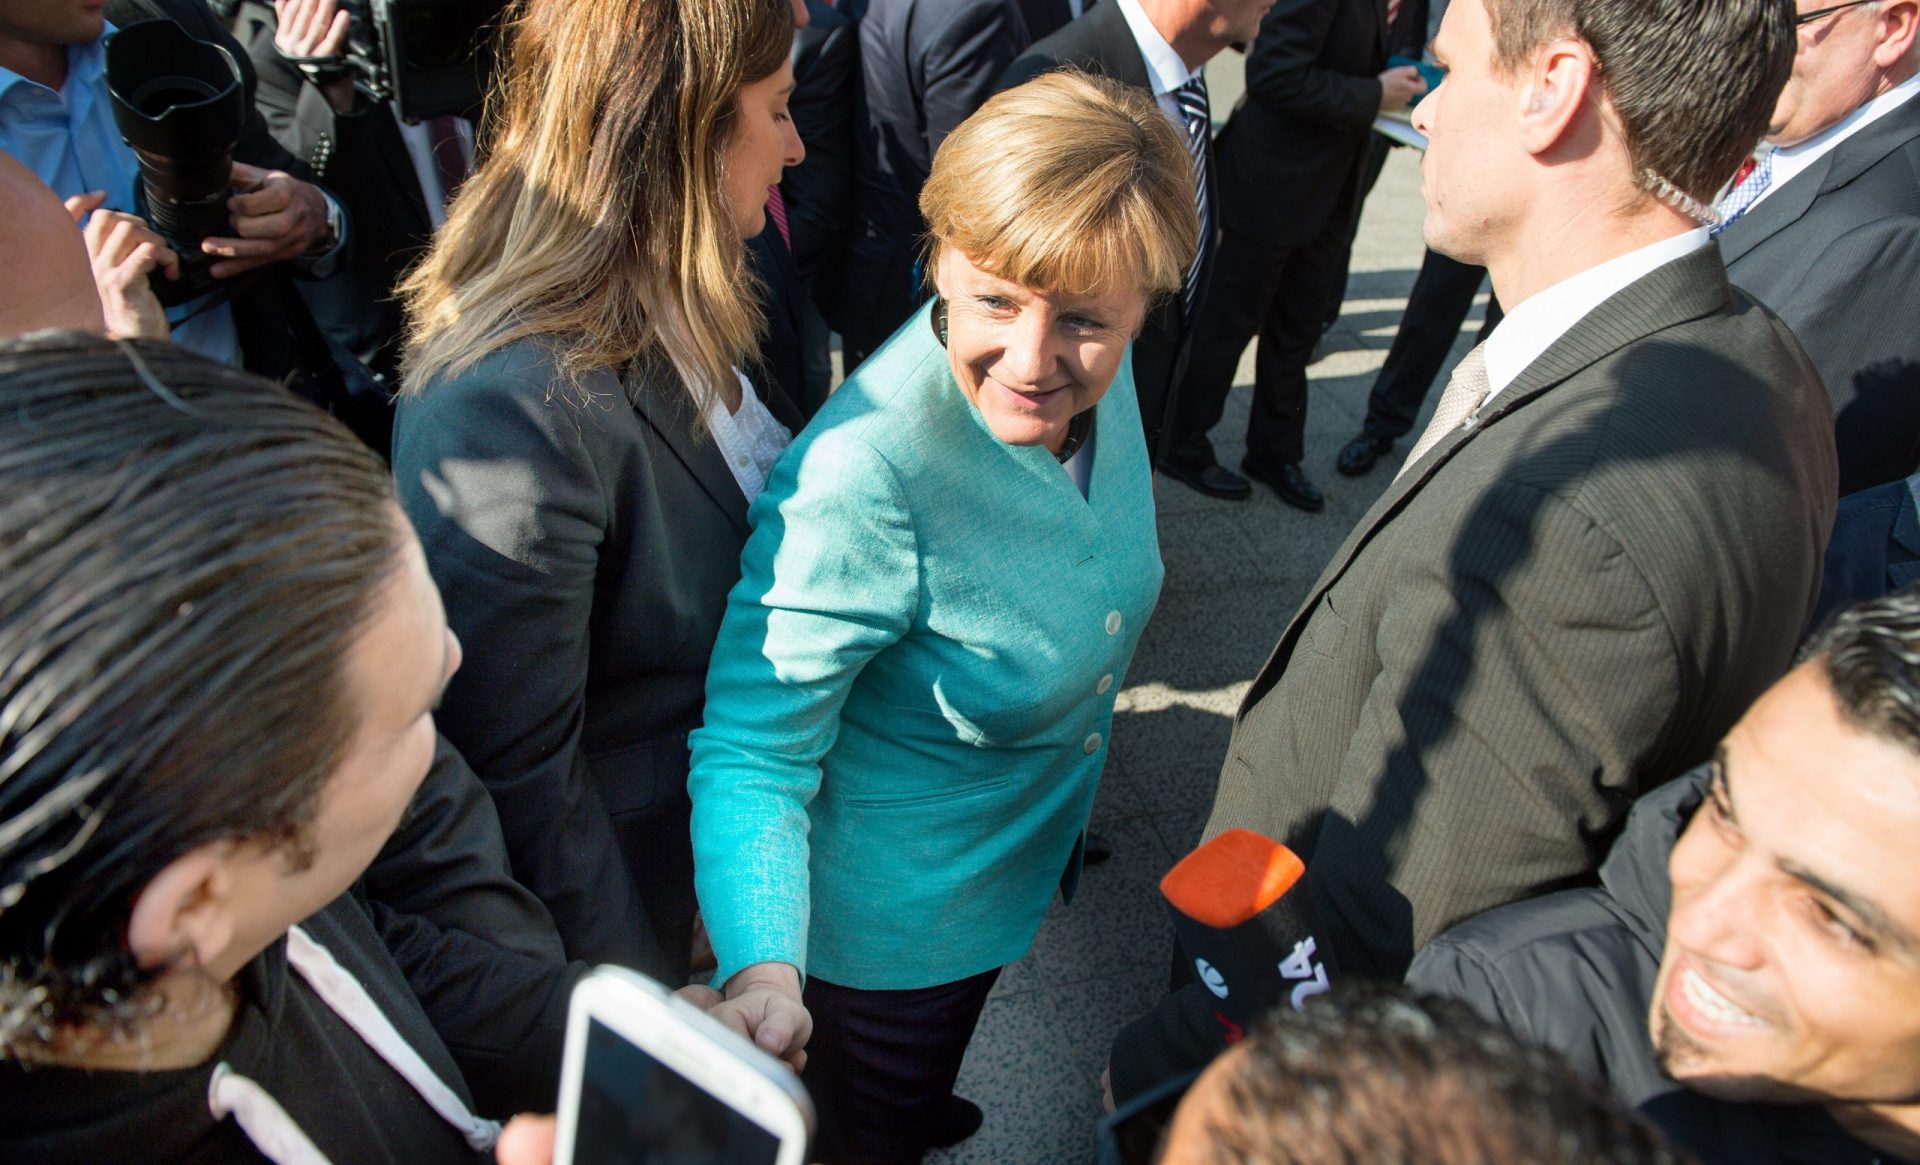 Merkel tira várias selfies com refugiados (fotos)